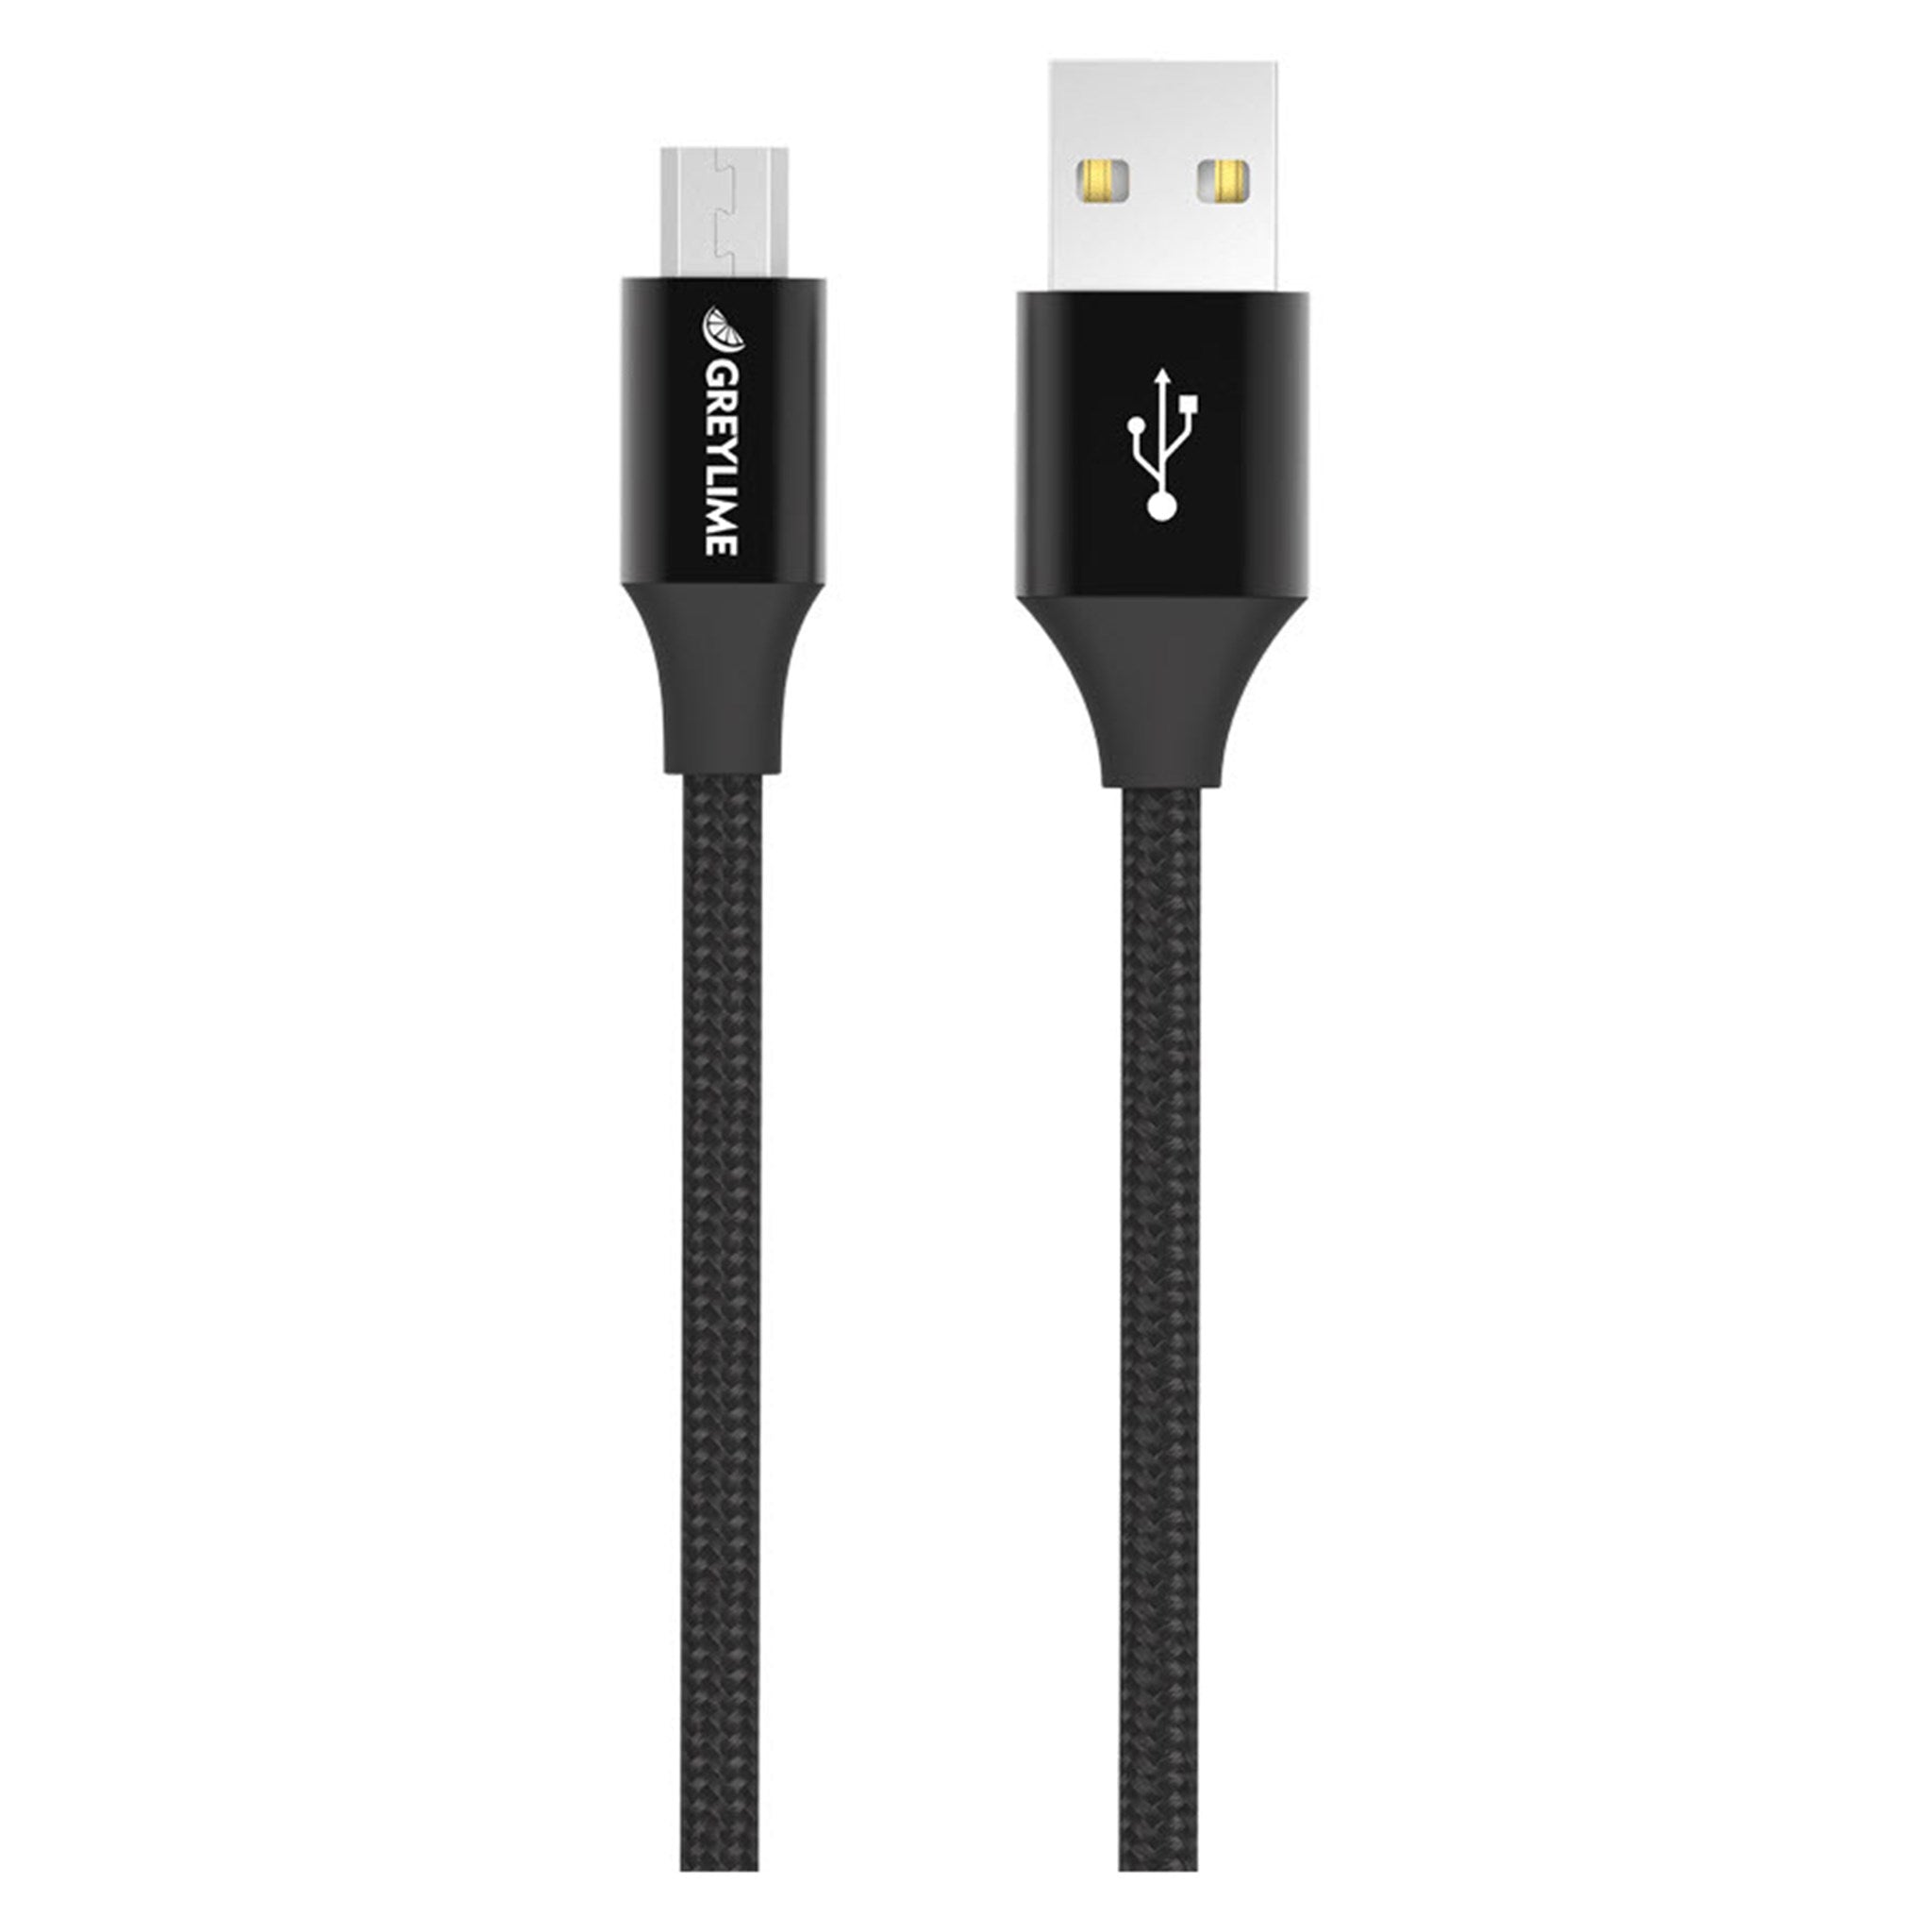 Billede af GreyLime Braided USB-A til Micro USB Kabel Sort 1m hos GreyLime